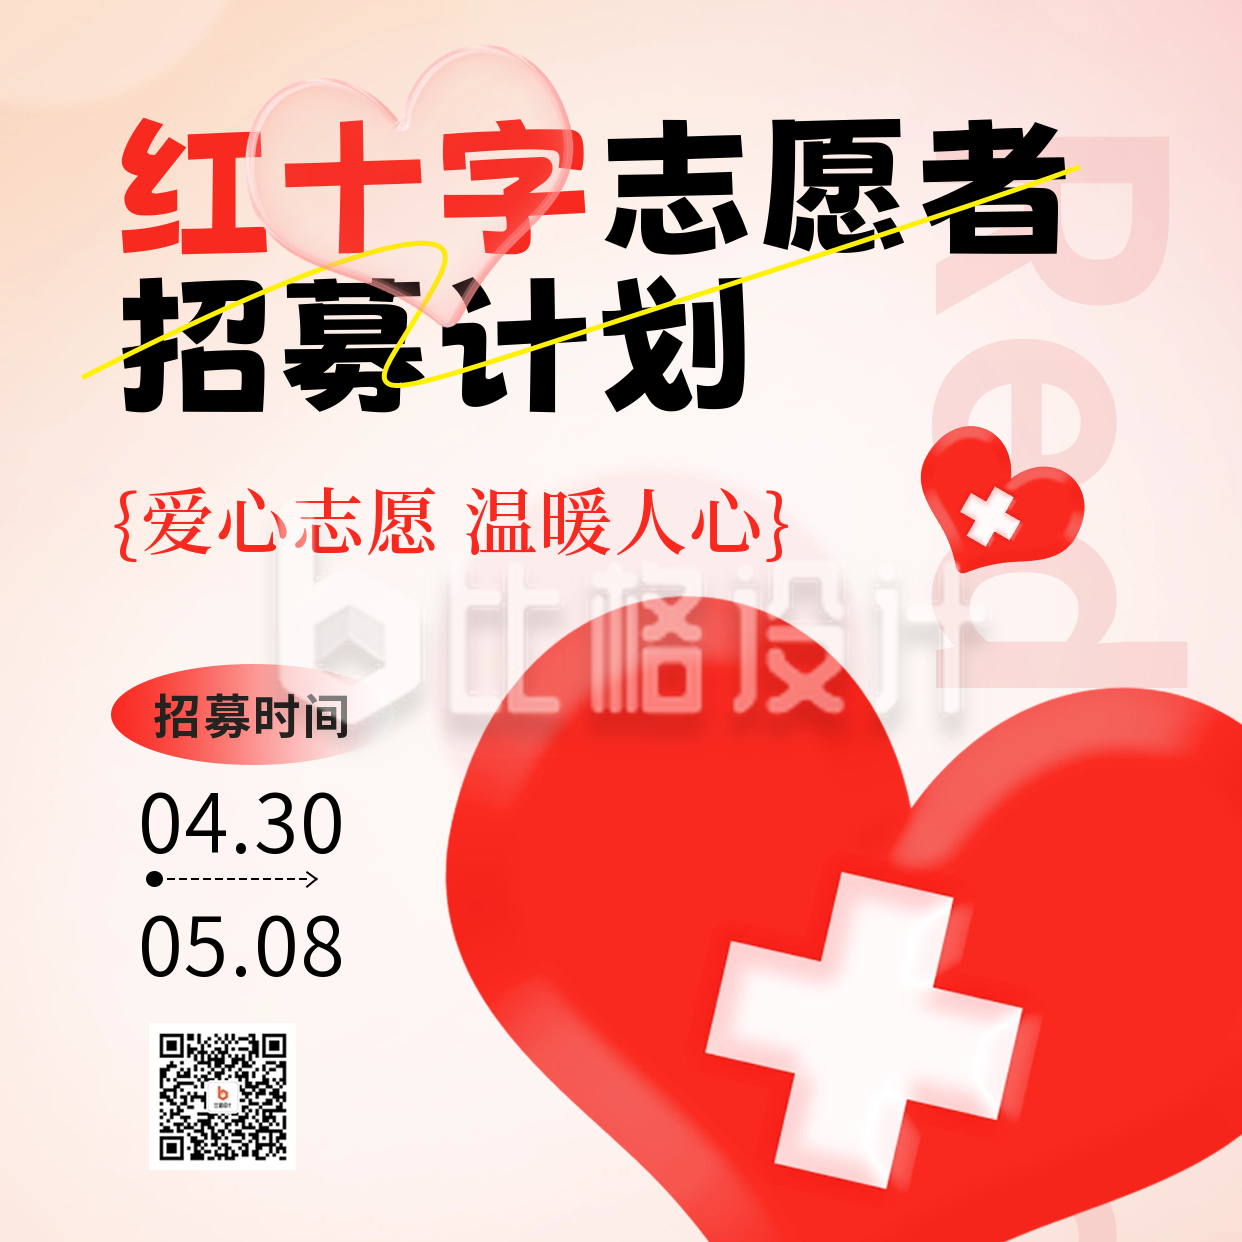 红十字志愿者招募方形海报